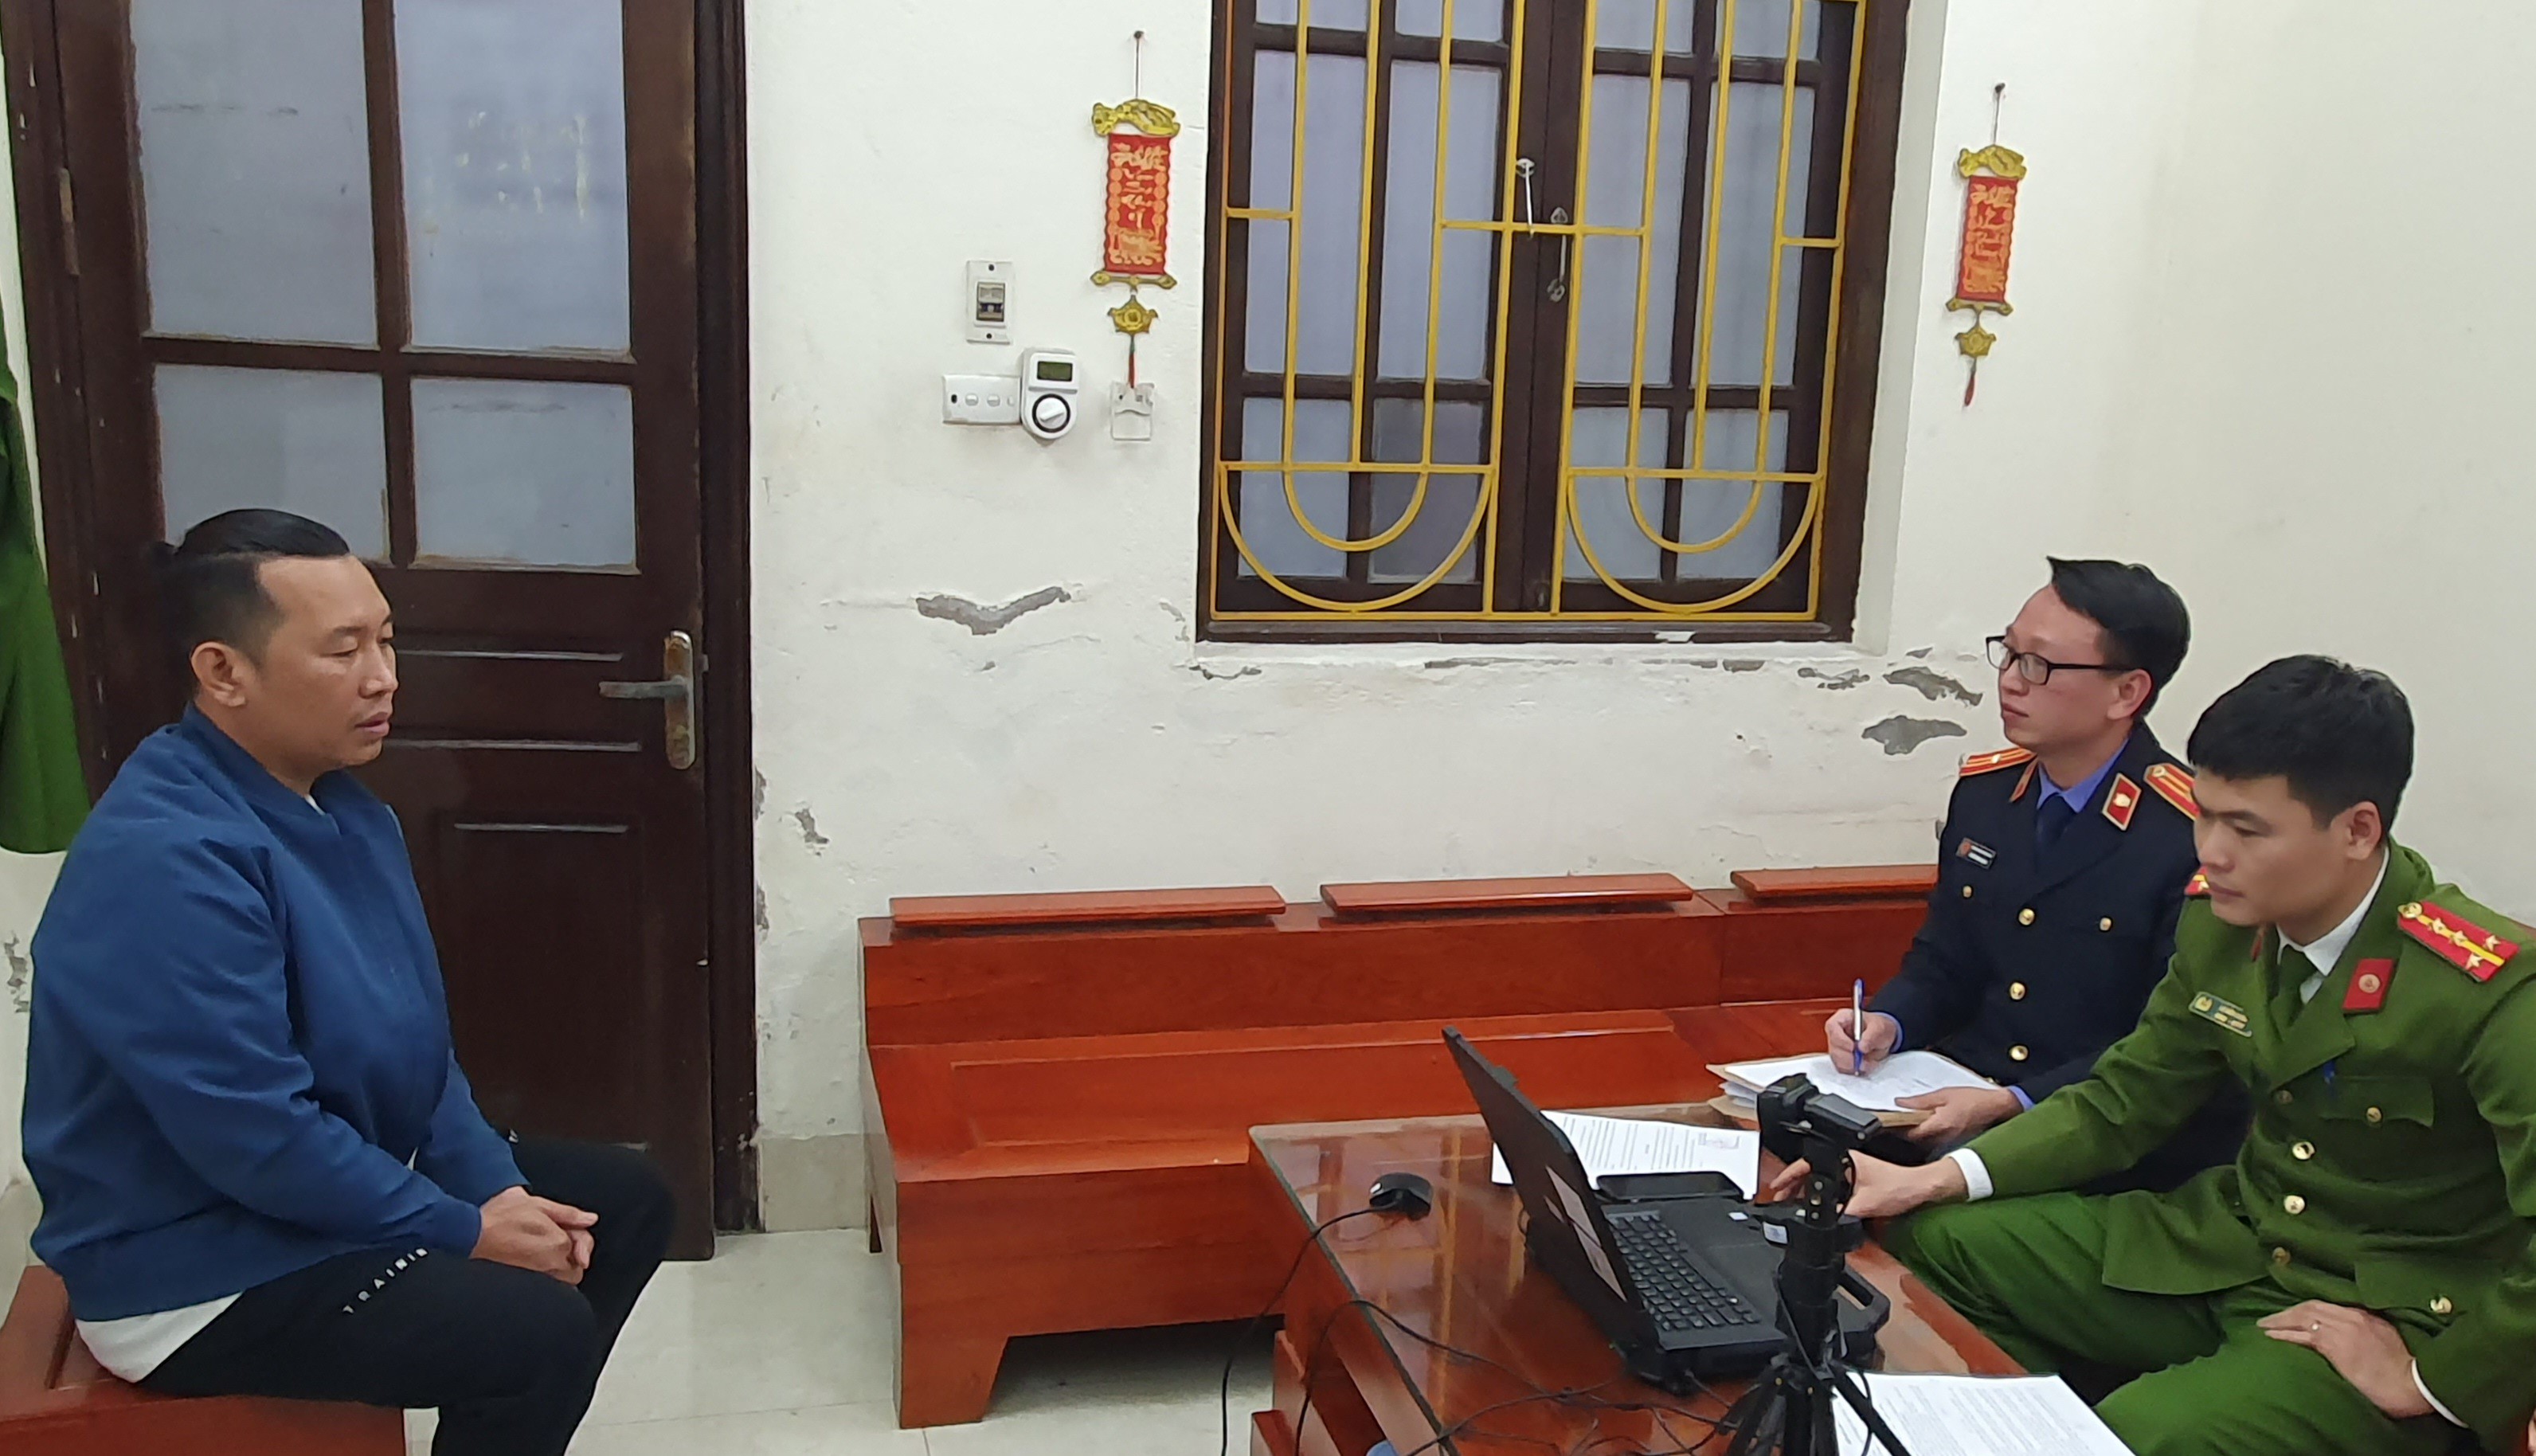 Kiểm sát viên lấy lời khai của Tuấn. Ảnh: Viện Kiểm sát nhân tỉnh Bắc Ninh